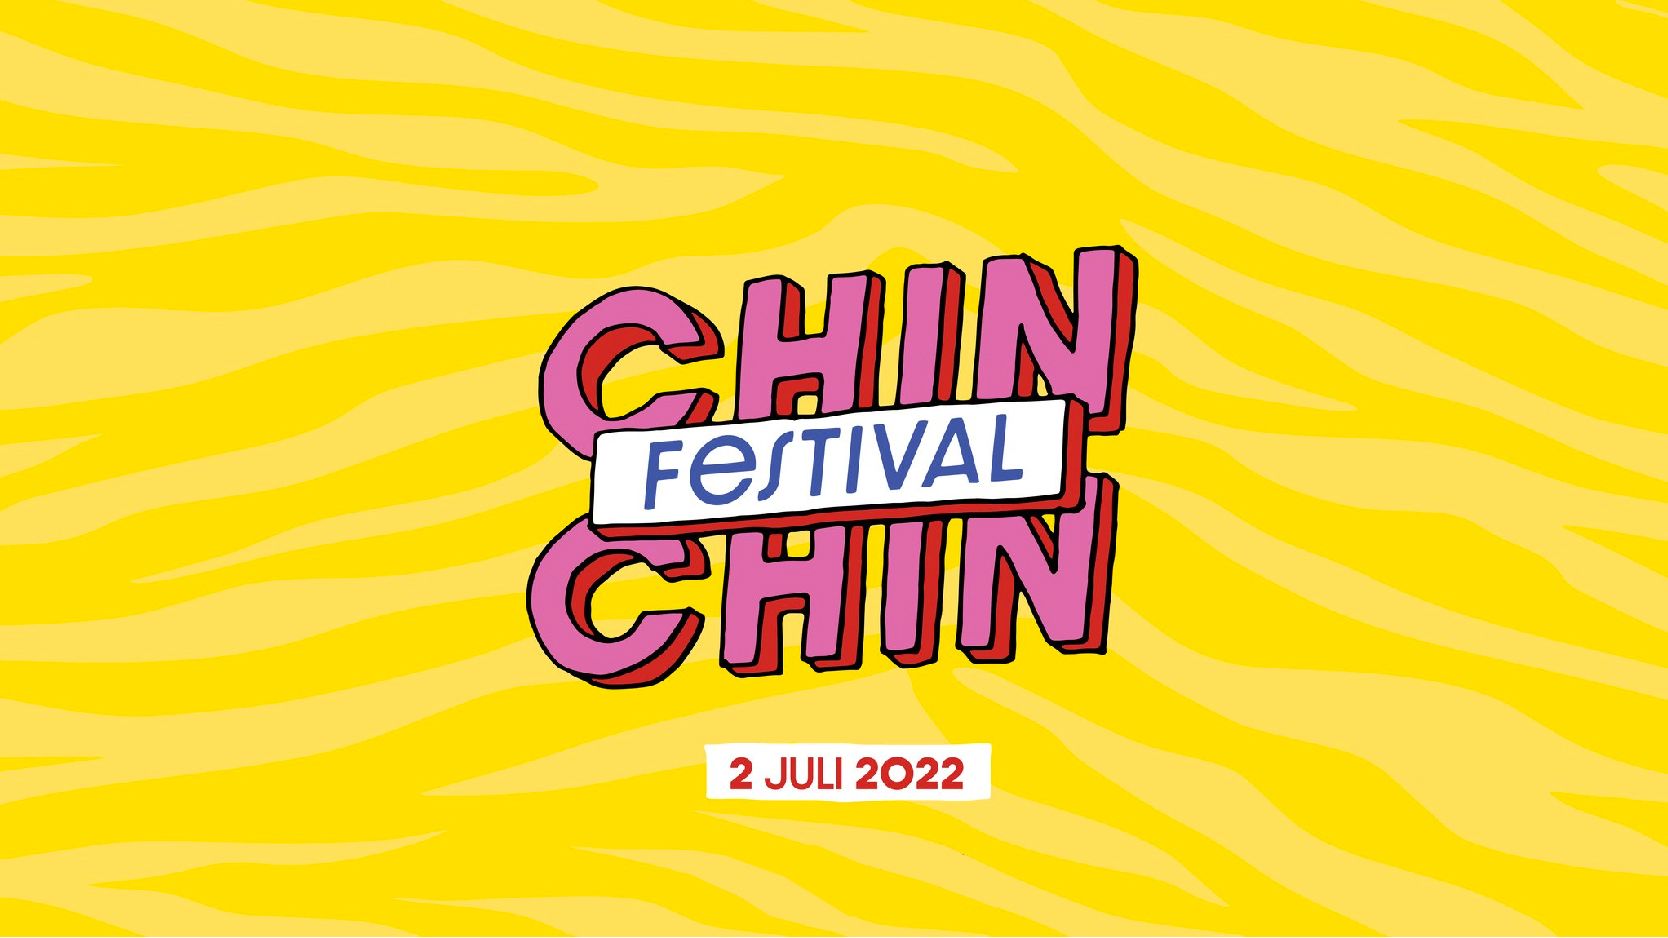 Chin Chin Festival cover